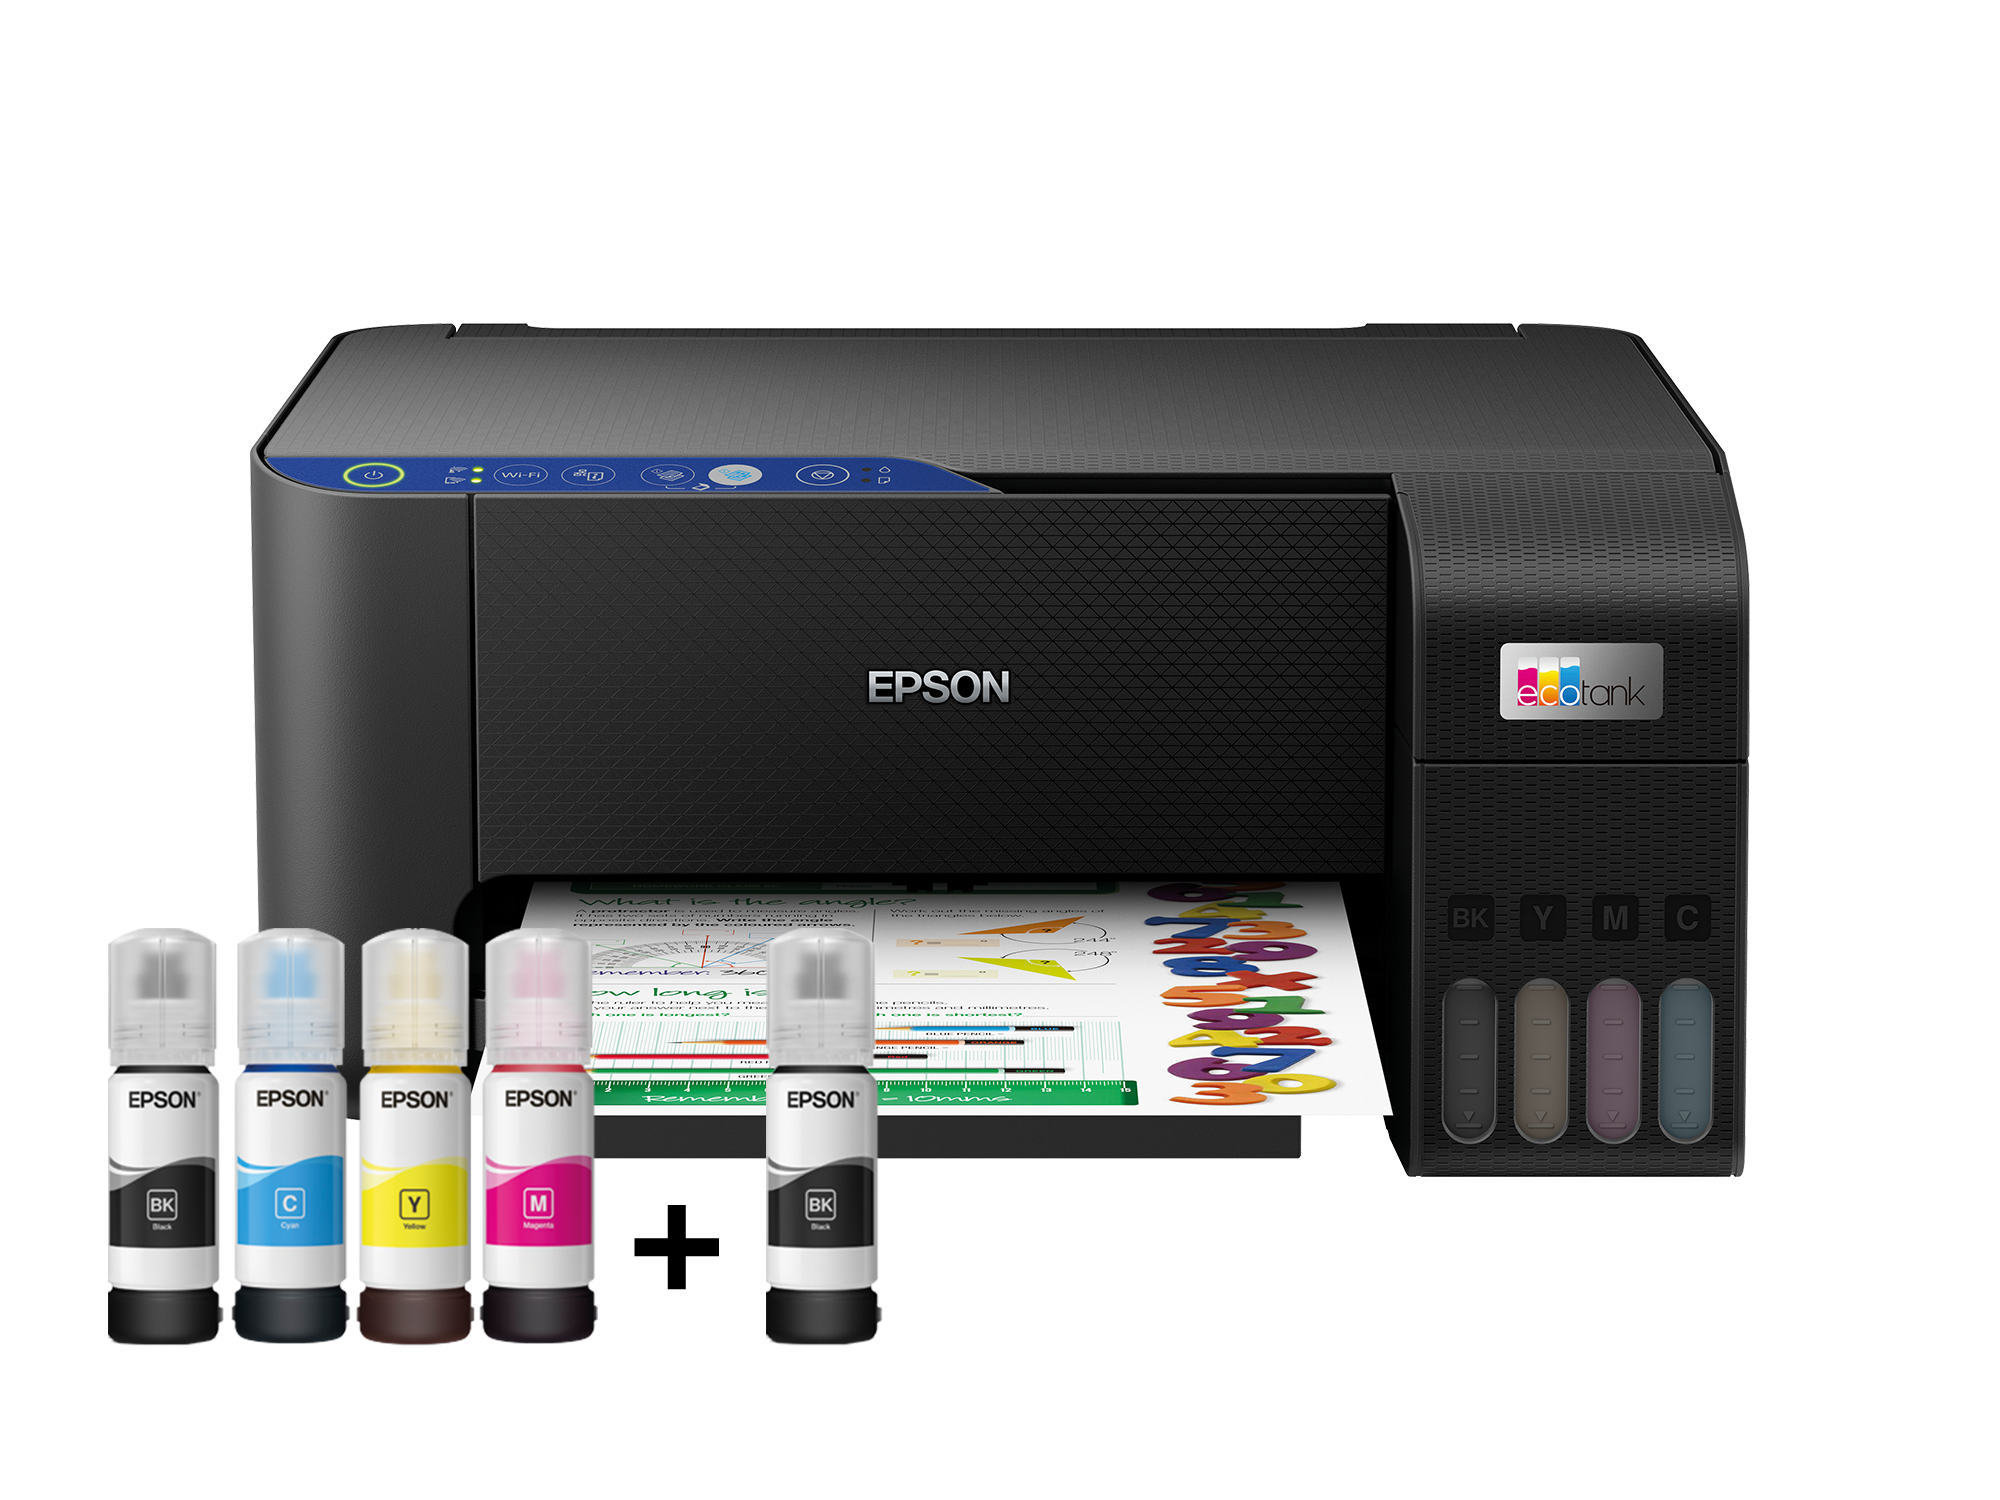 Imprimante Multifonction Epson EcoTank L3251